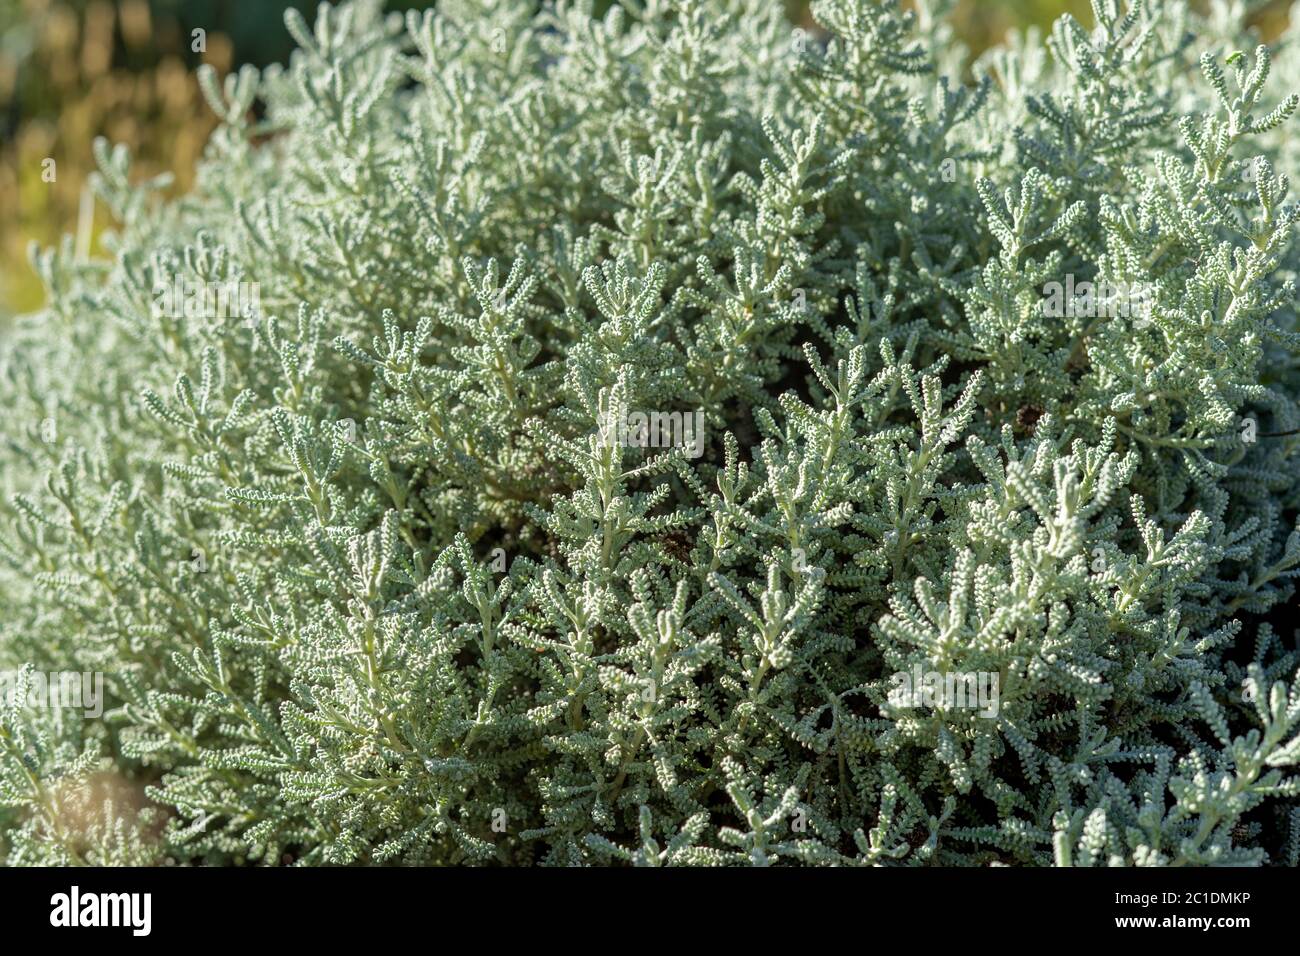 olive herb shrub Stock Photo